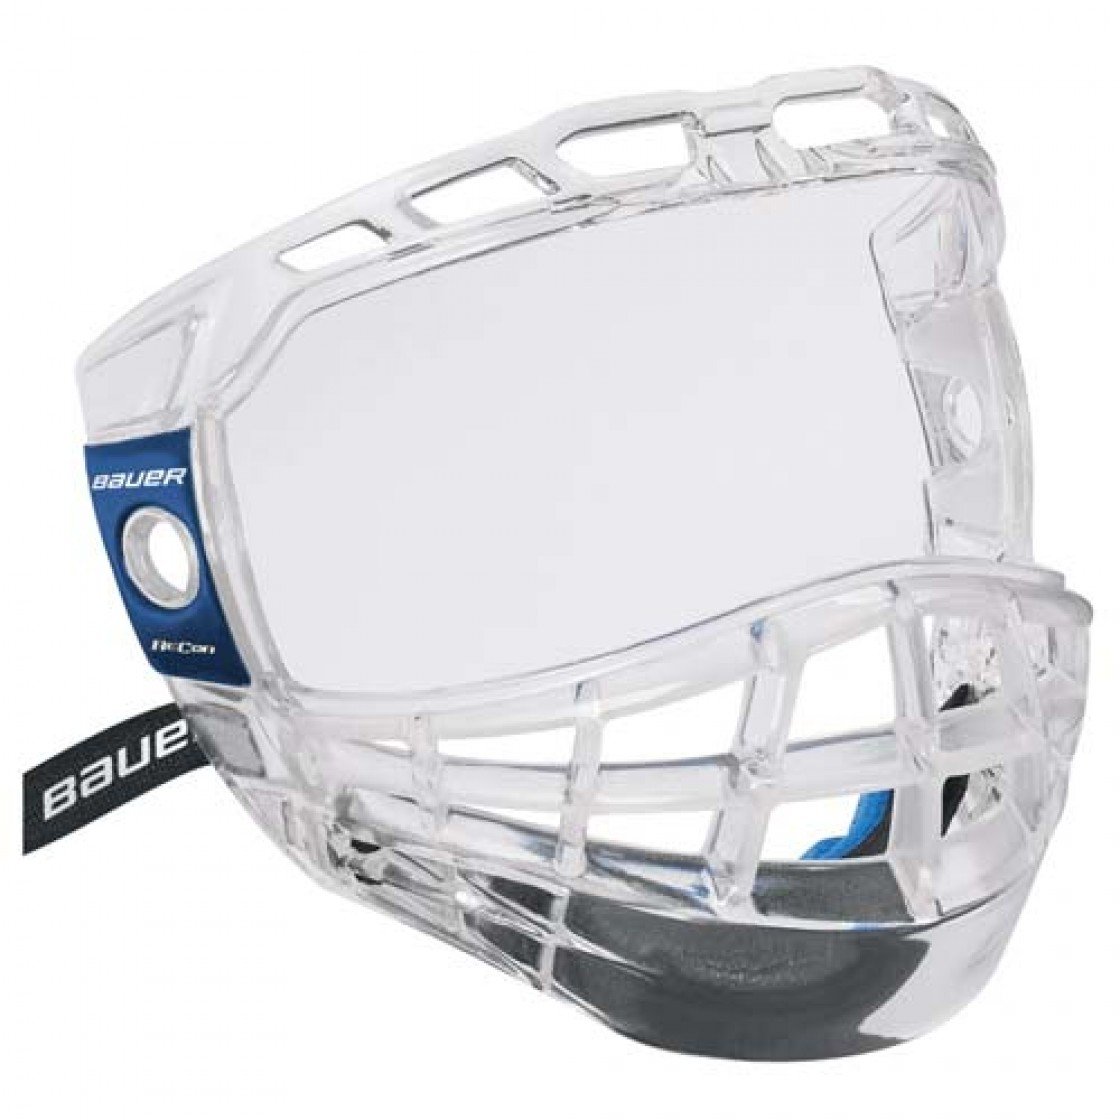 Маска хоккейная bauer. Маска визор Bauer. Маска визор для хоккея Bauer. Bauer Recon маска визор. Маска хоккейная ITECH.